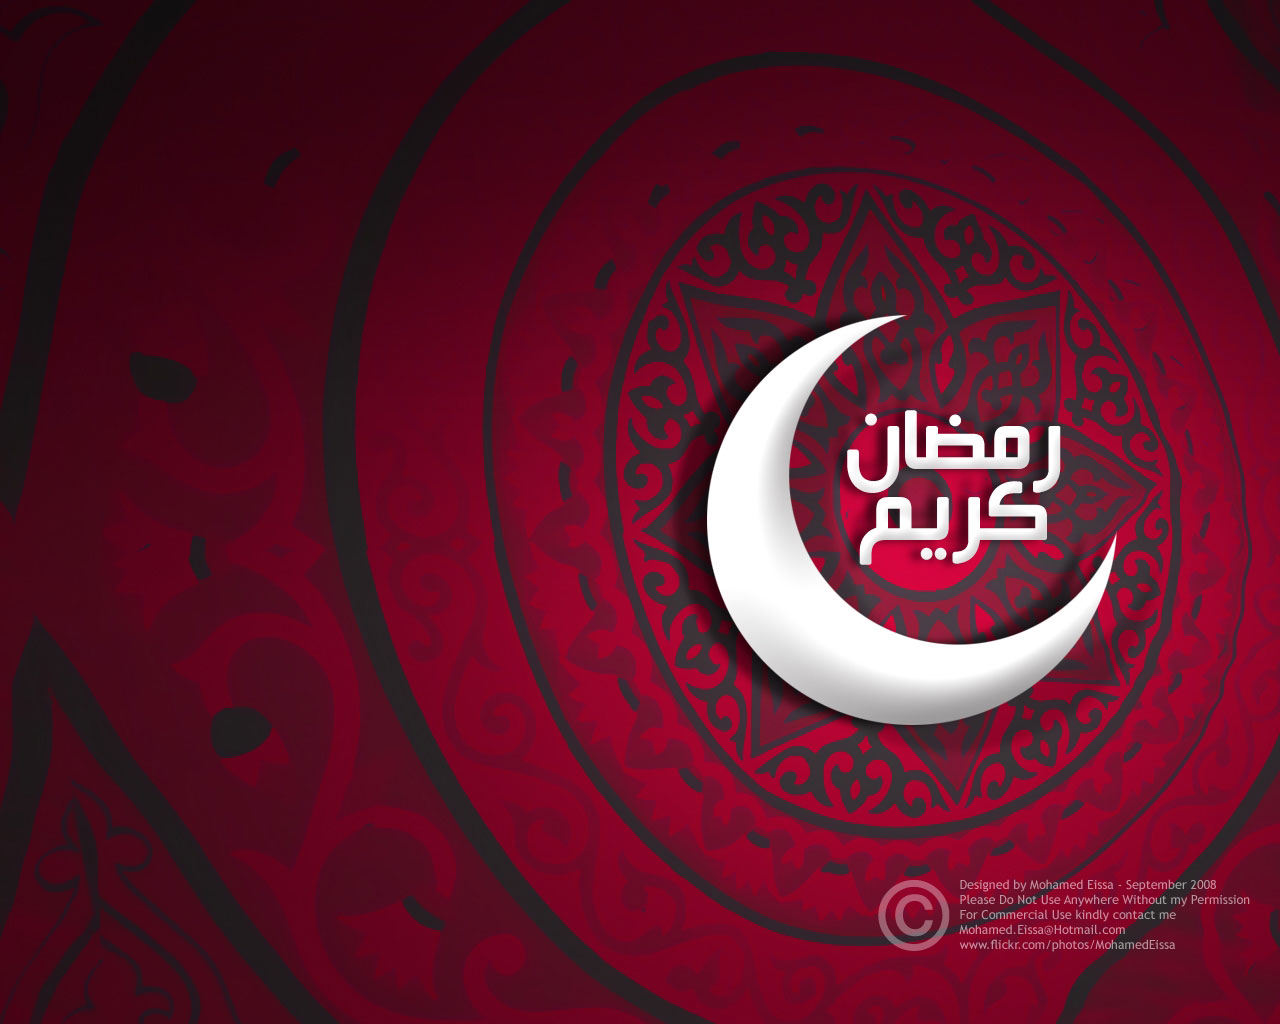 Wallpaper Merah Maroon - Ramzan Mubarak Wallpaper 2019 - HD Wallpaper 